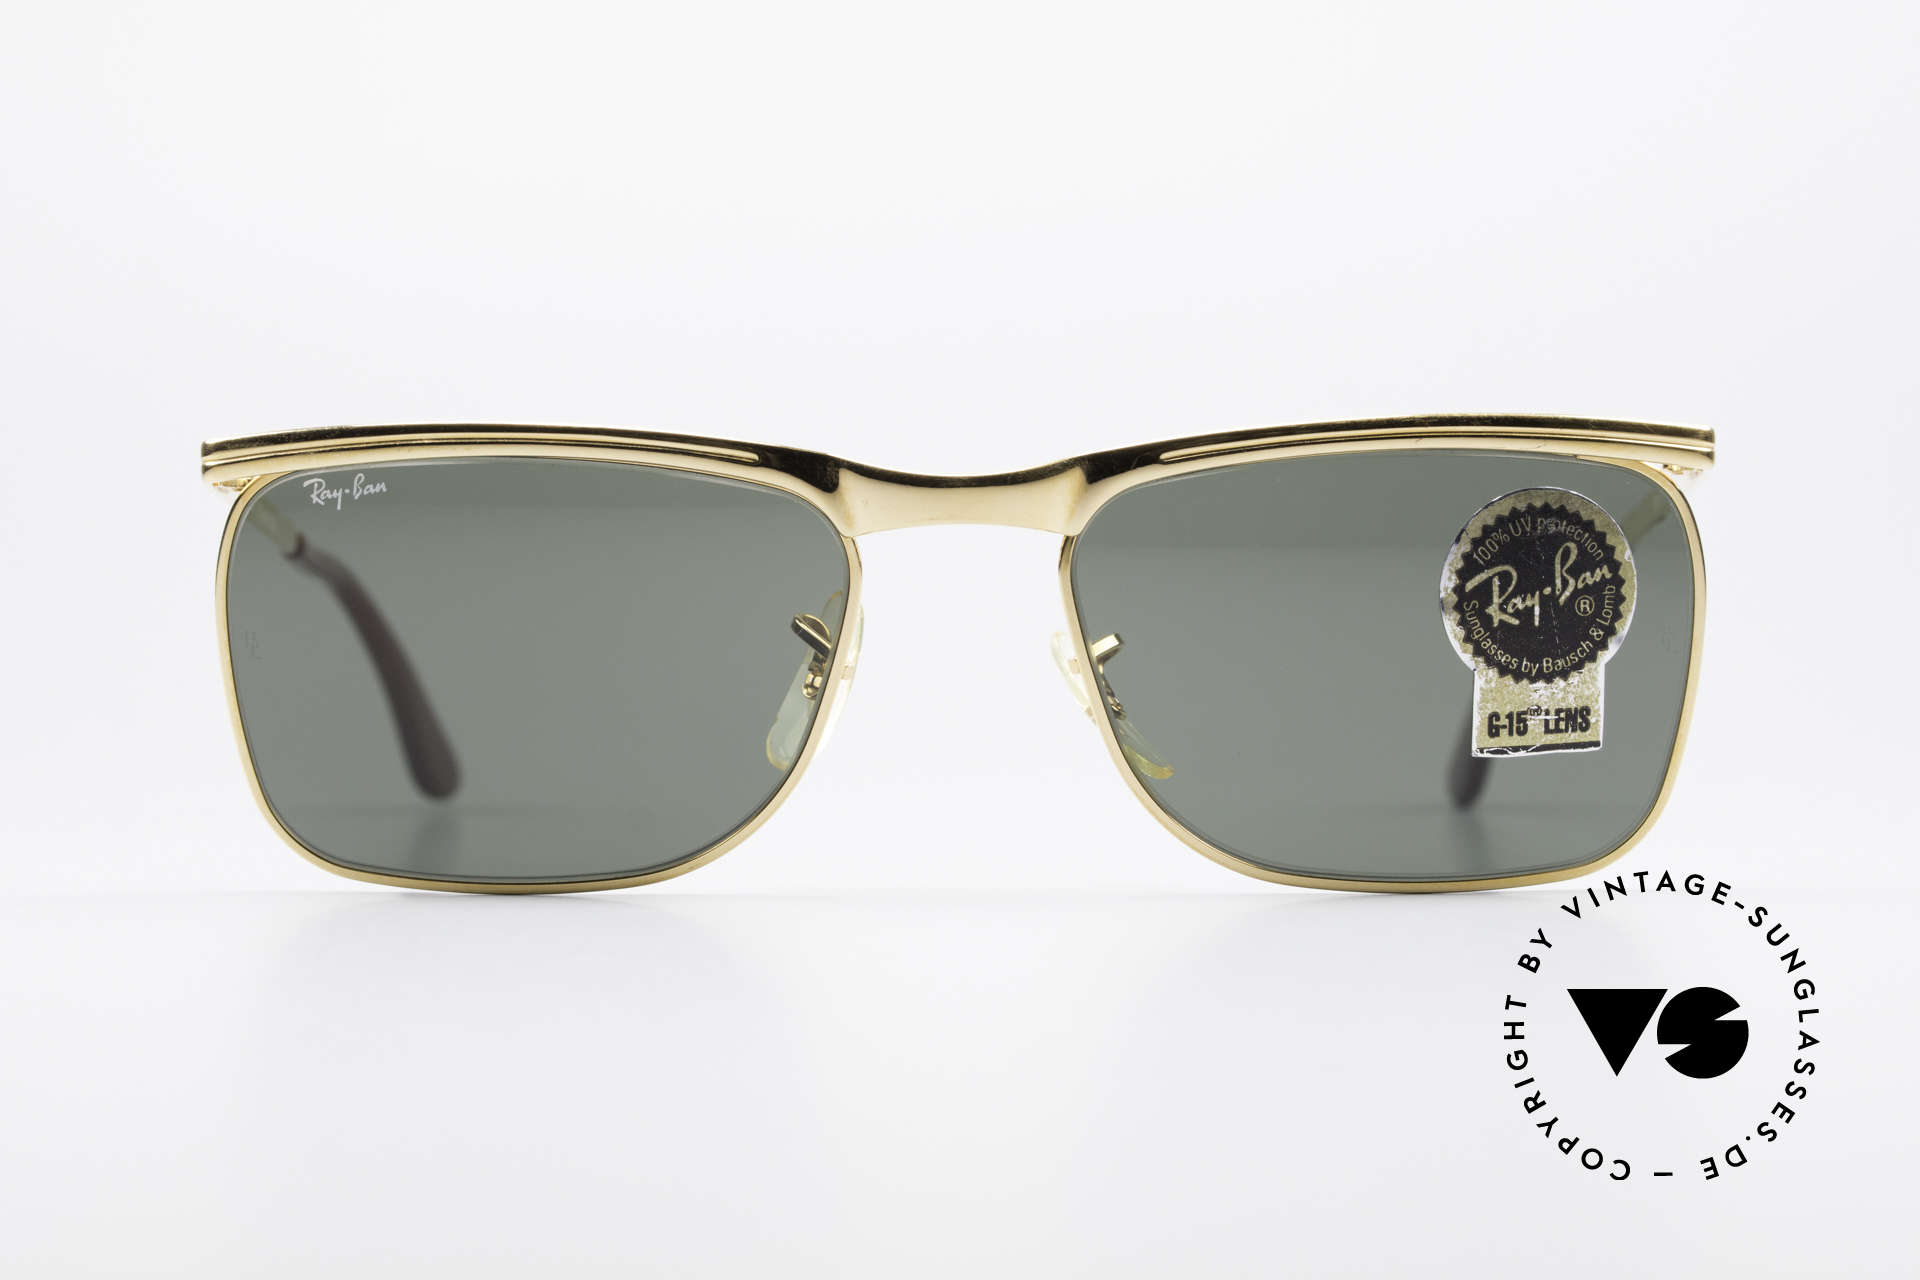 Sunglasses Ray Ban Signet Deluxe Original USA Sunglasses B&L